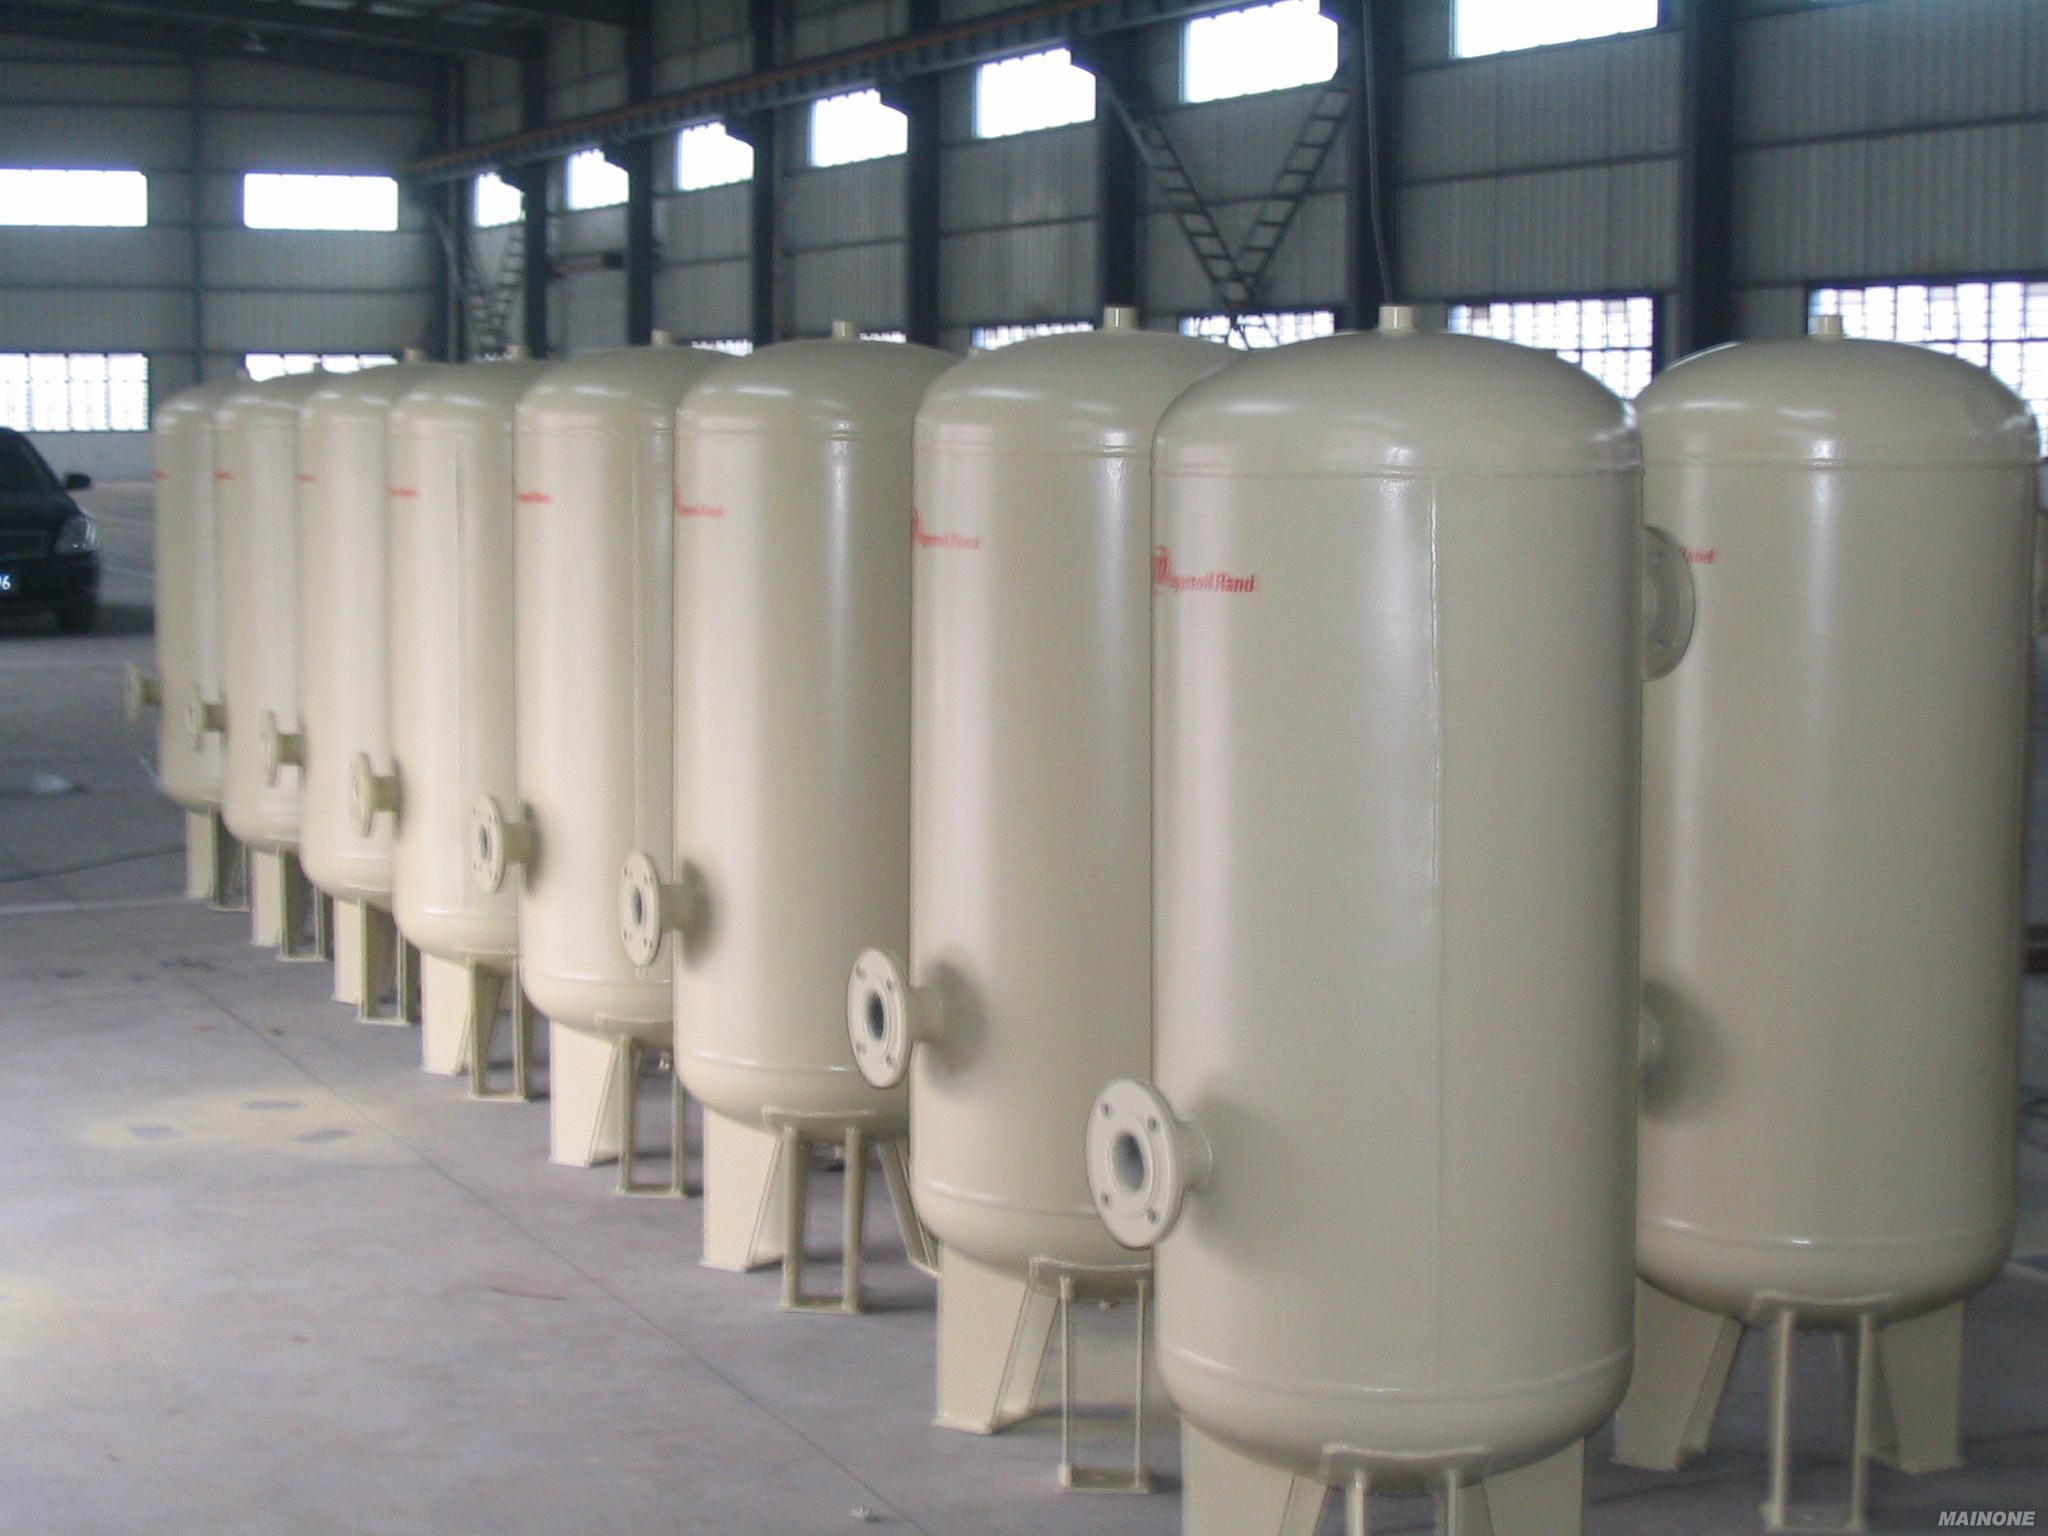 南京奧能鍋爐有限公司高壓容器分公司壓力容器生產線技術改造環境影響評價公示